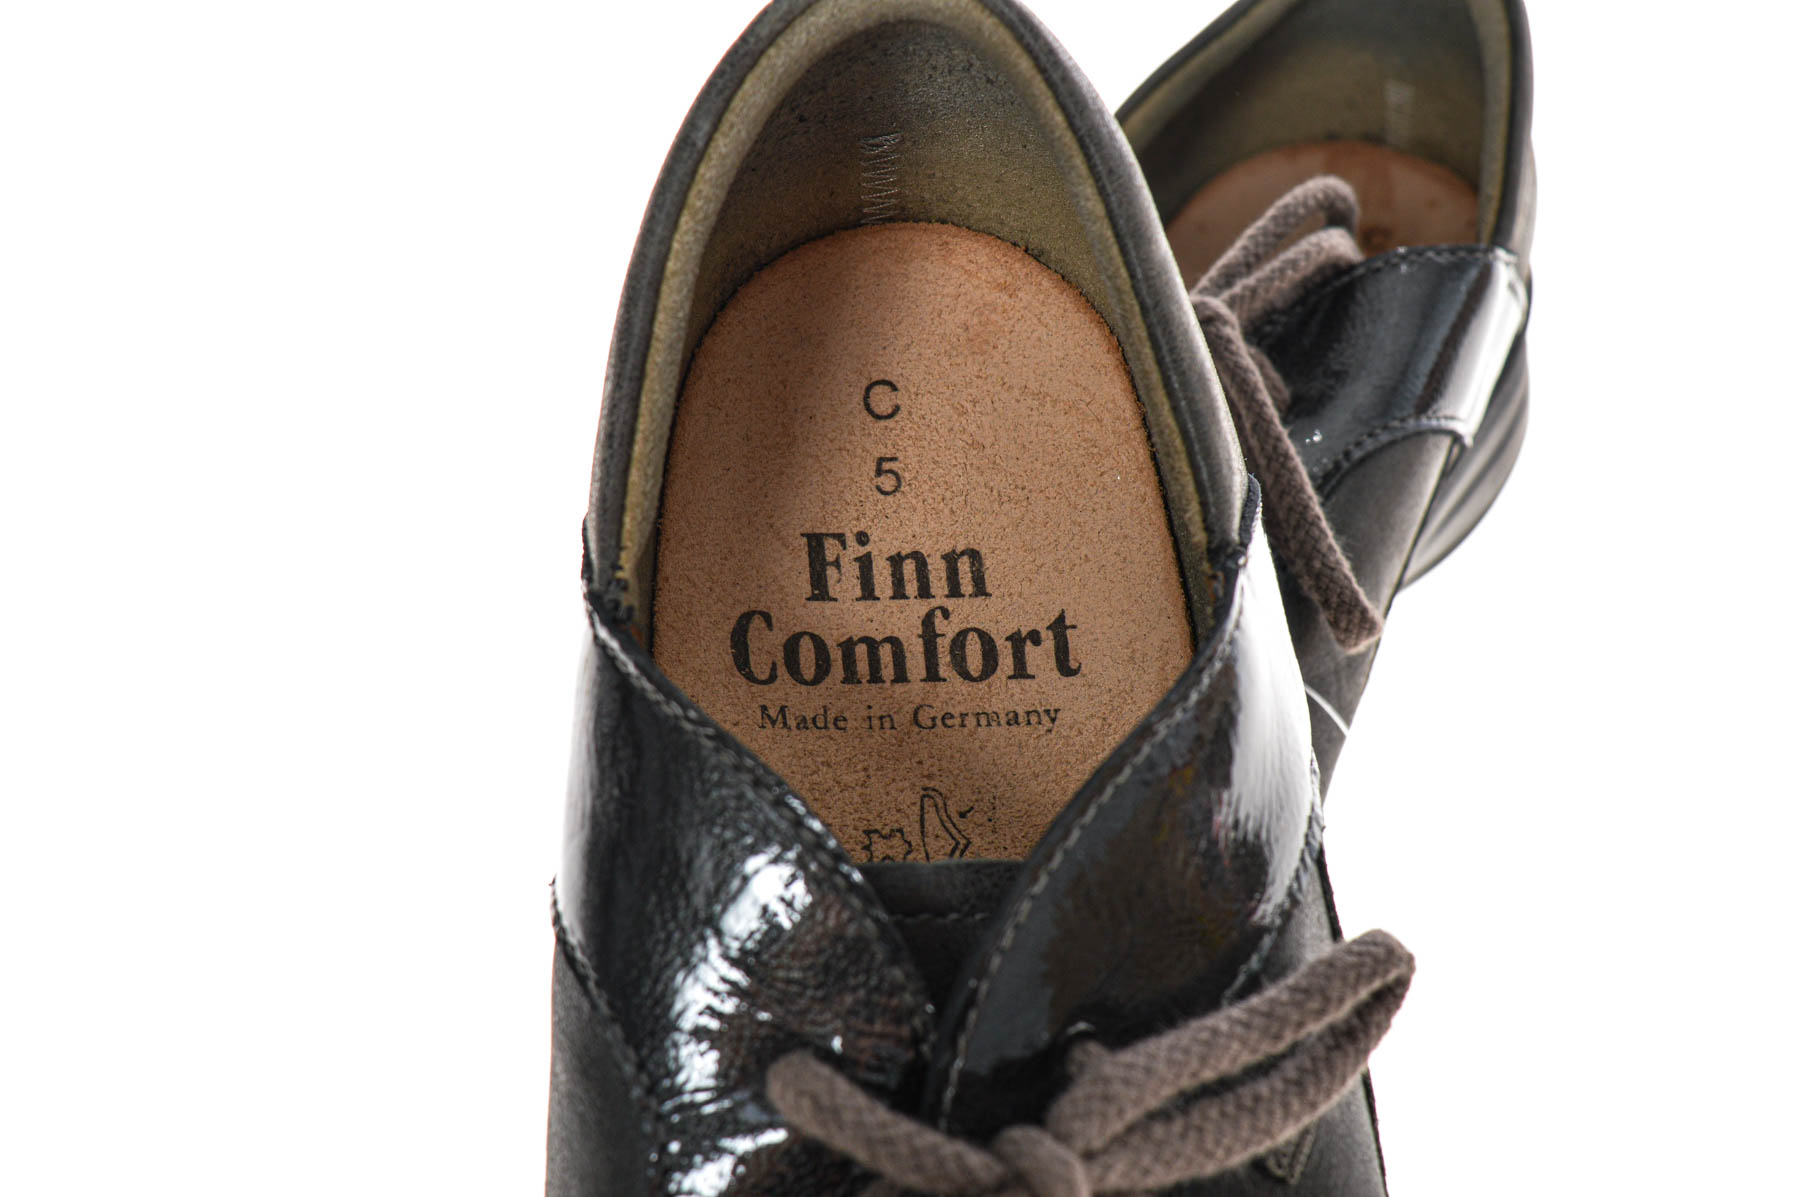 Дамски обувки- Finn Comfort - 4